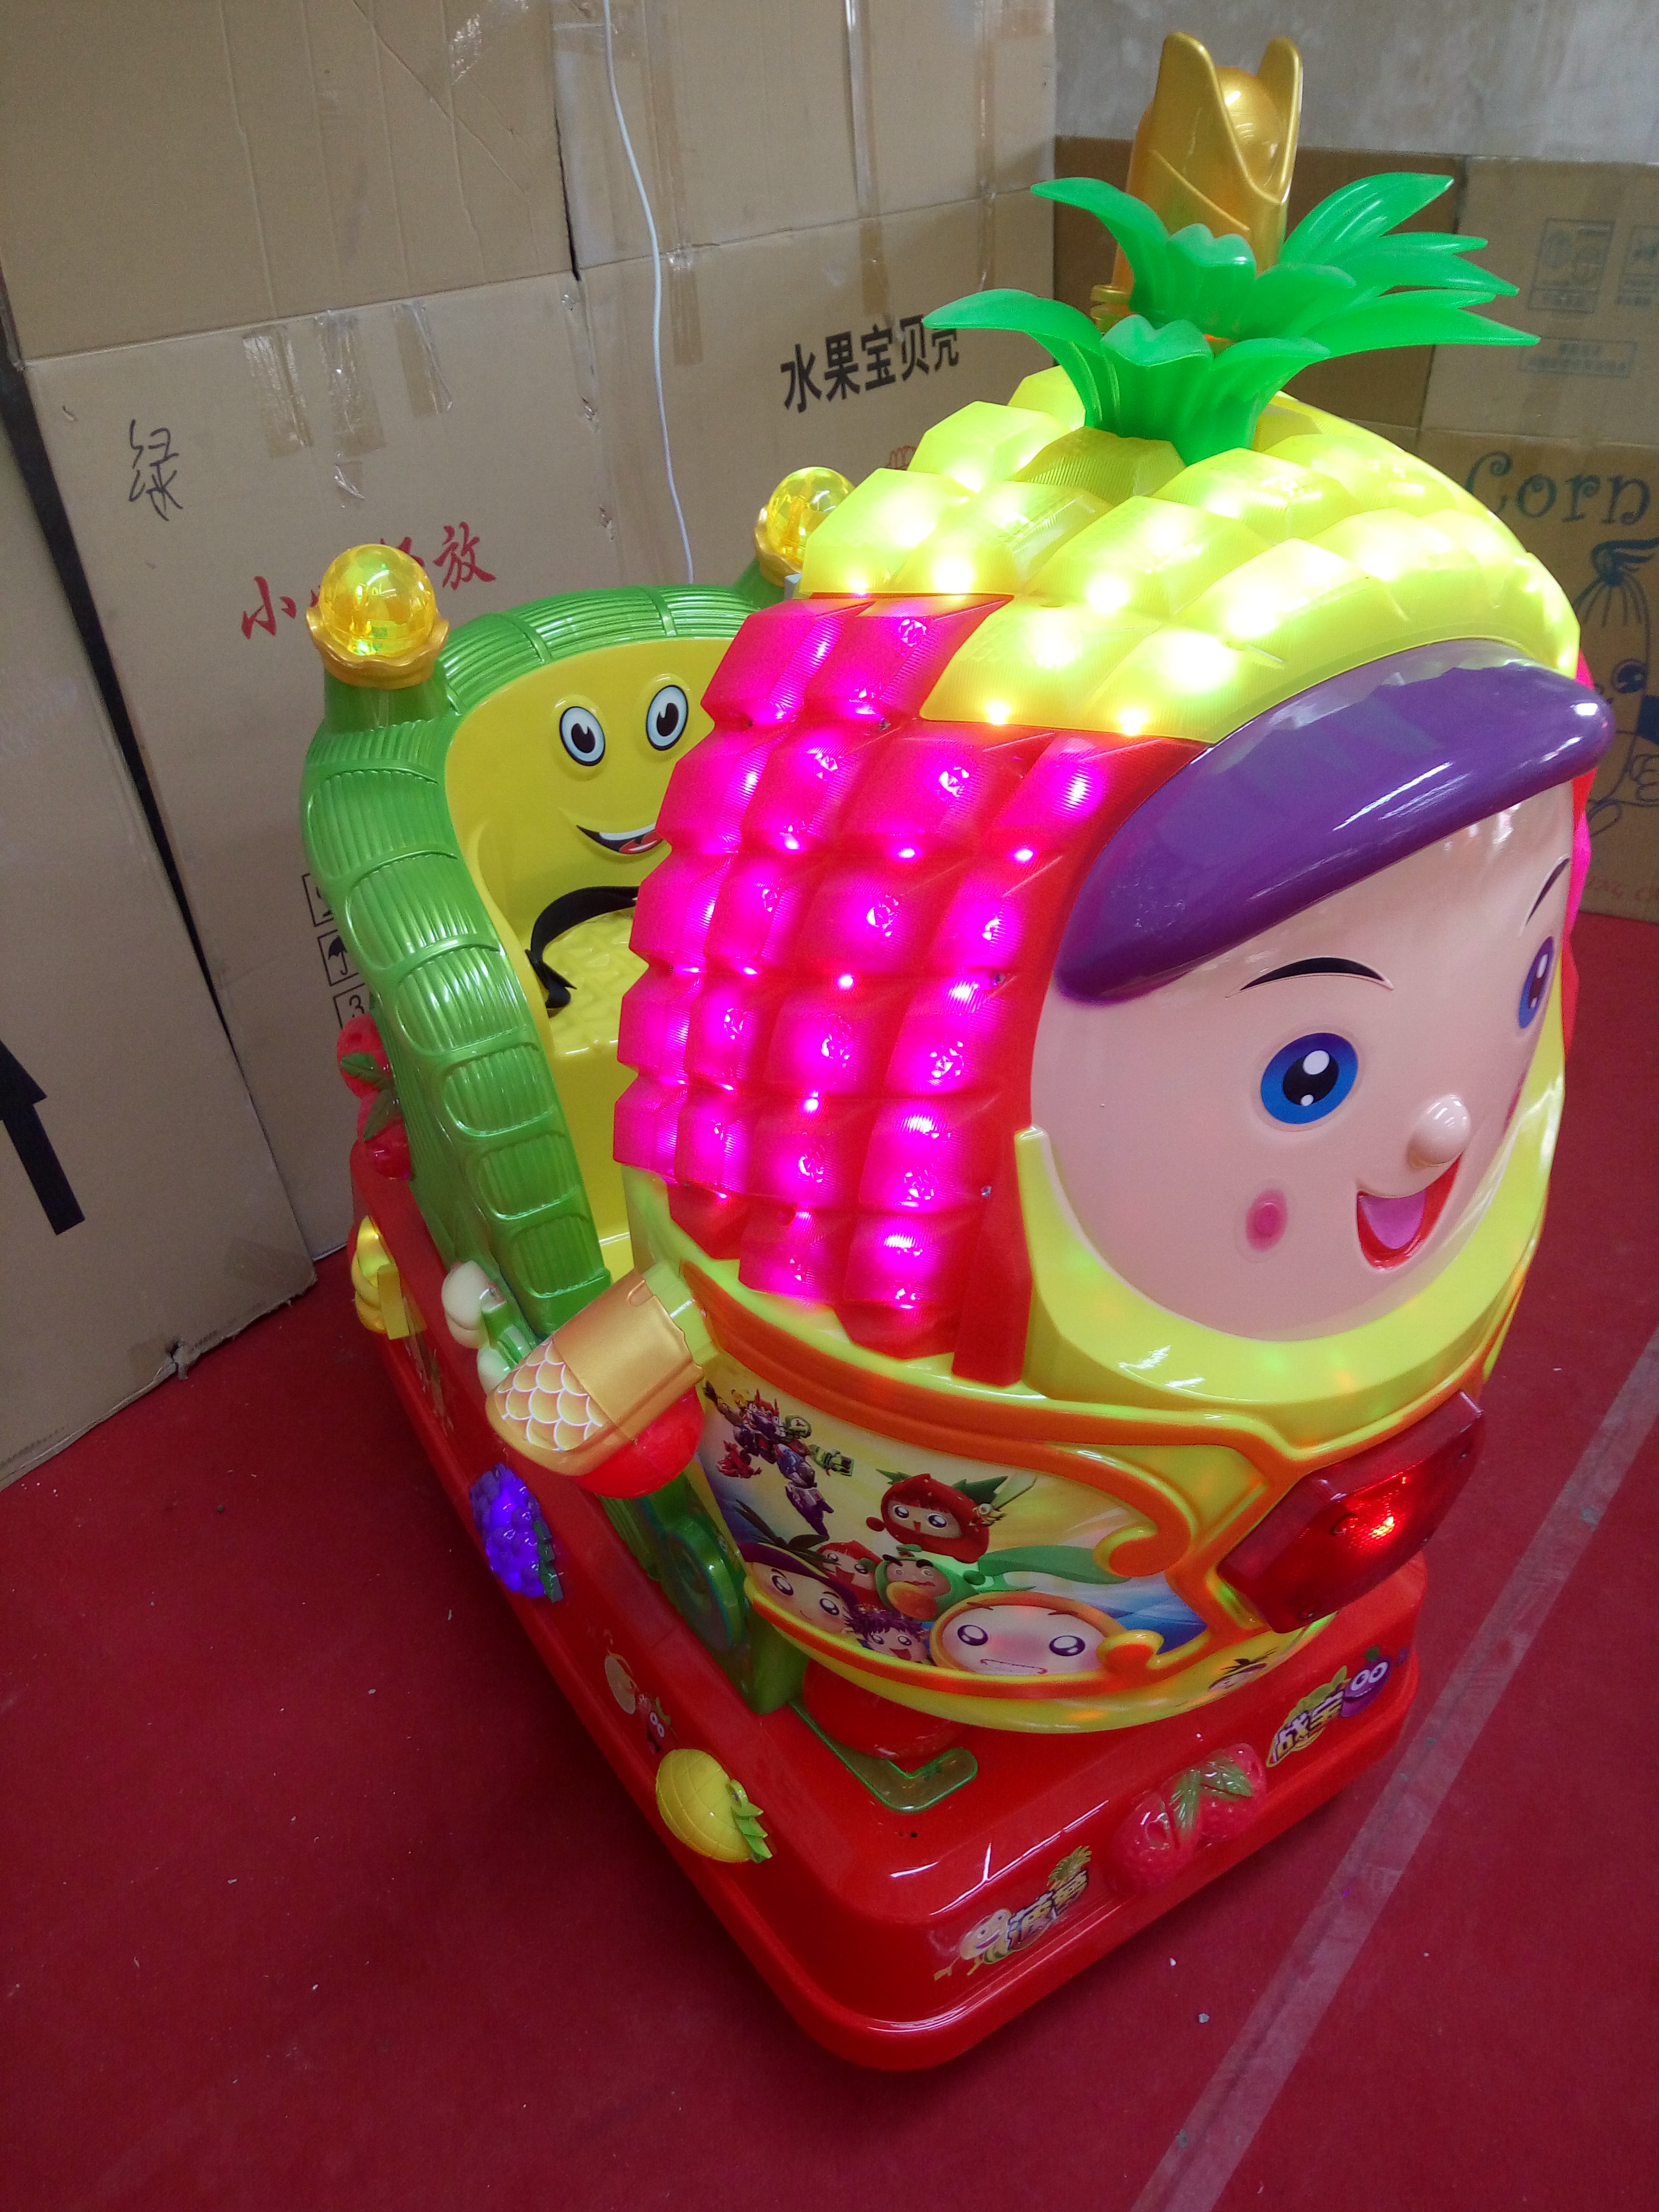 供应2016新款菠萝摇摆机 摇摆机价格  摇摆机厂家 摇摆机批发图片